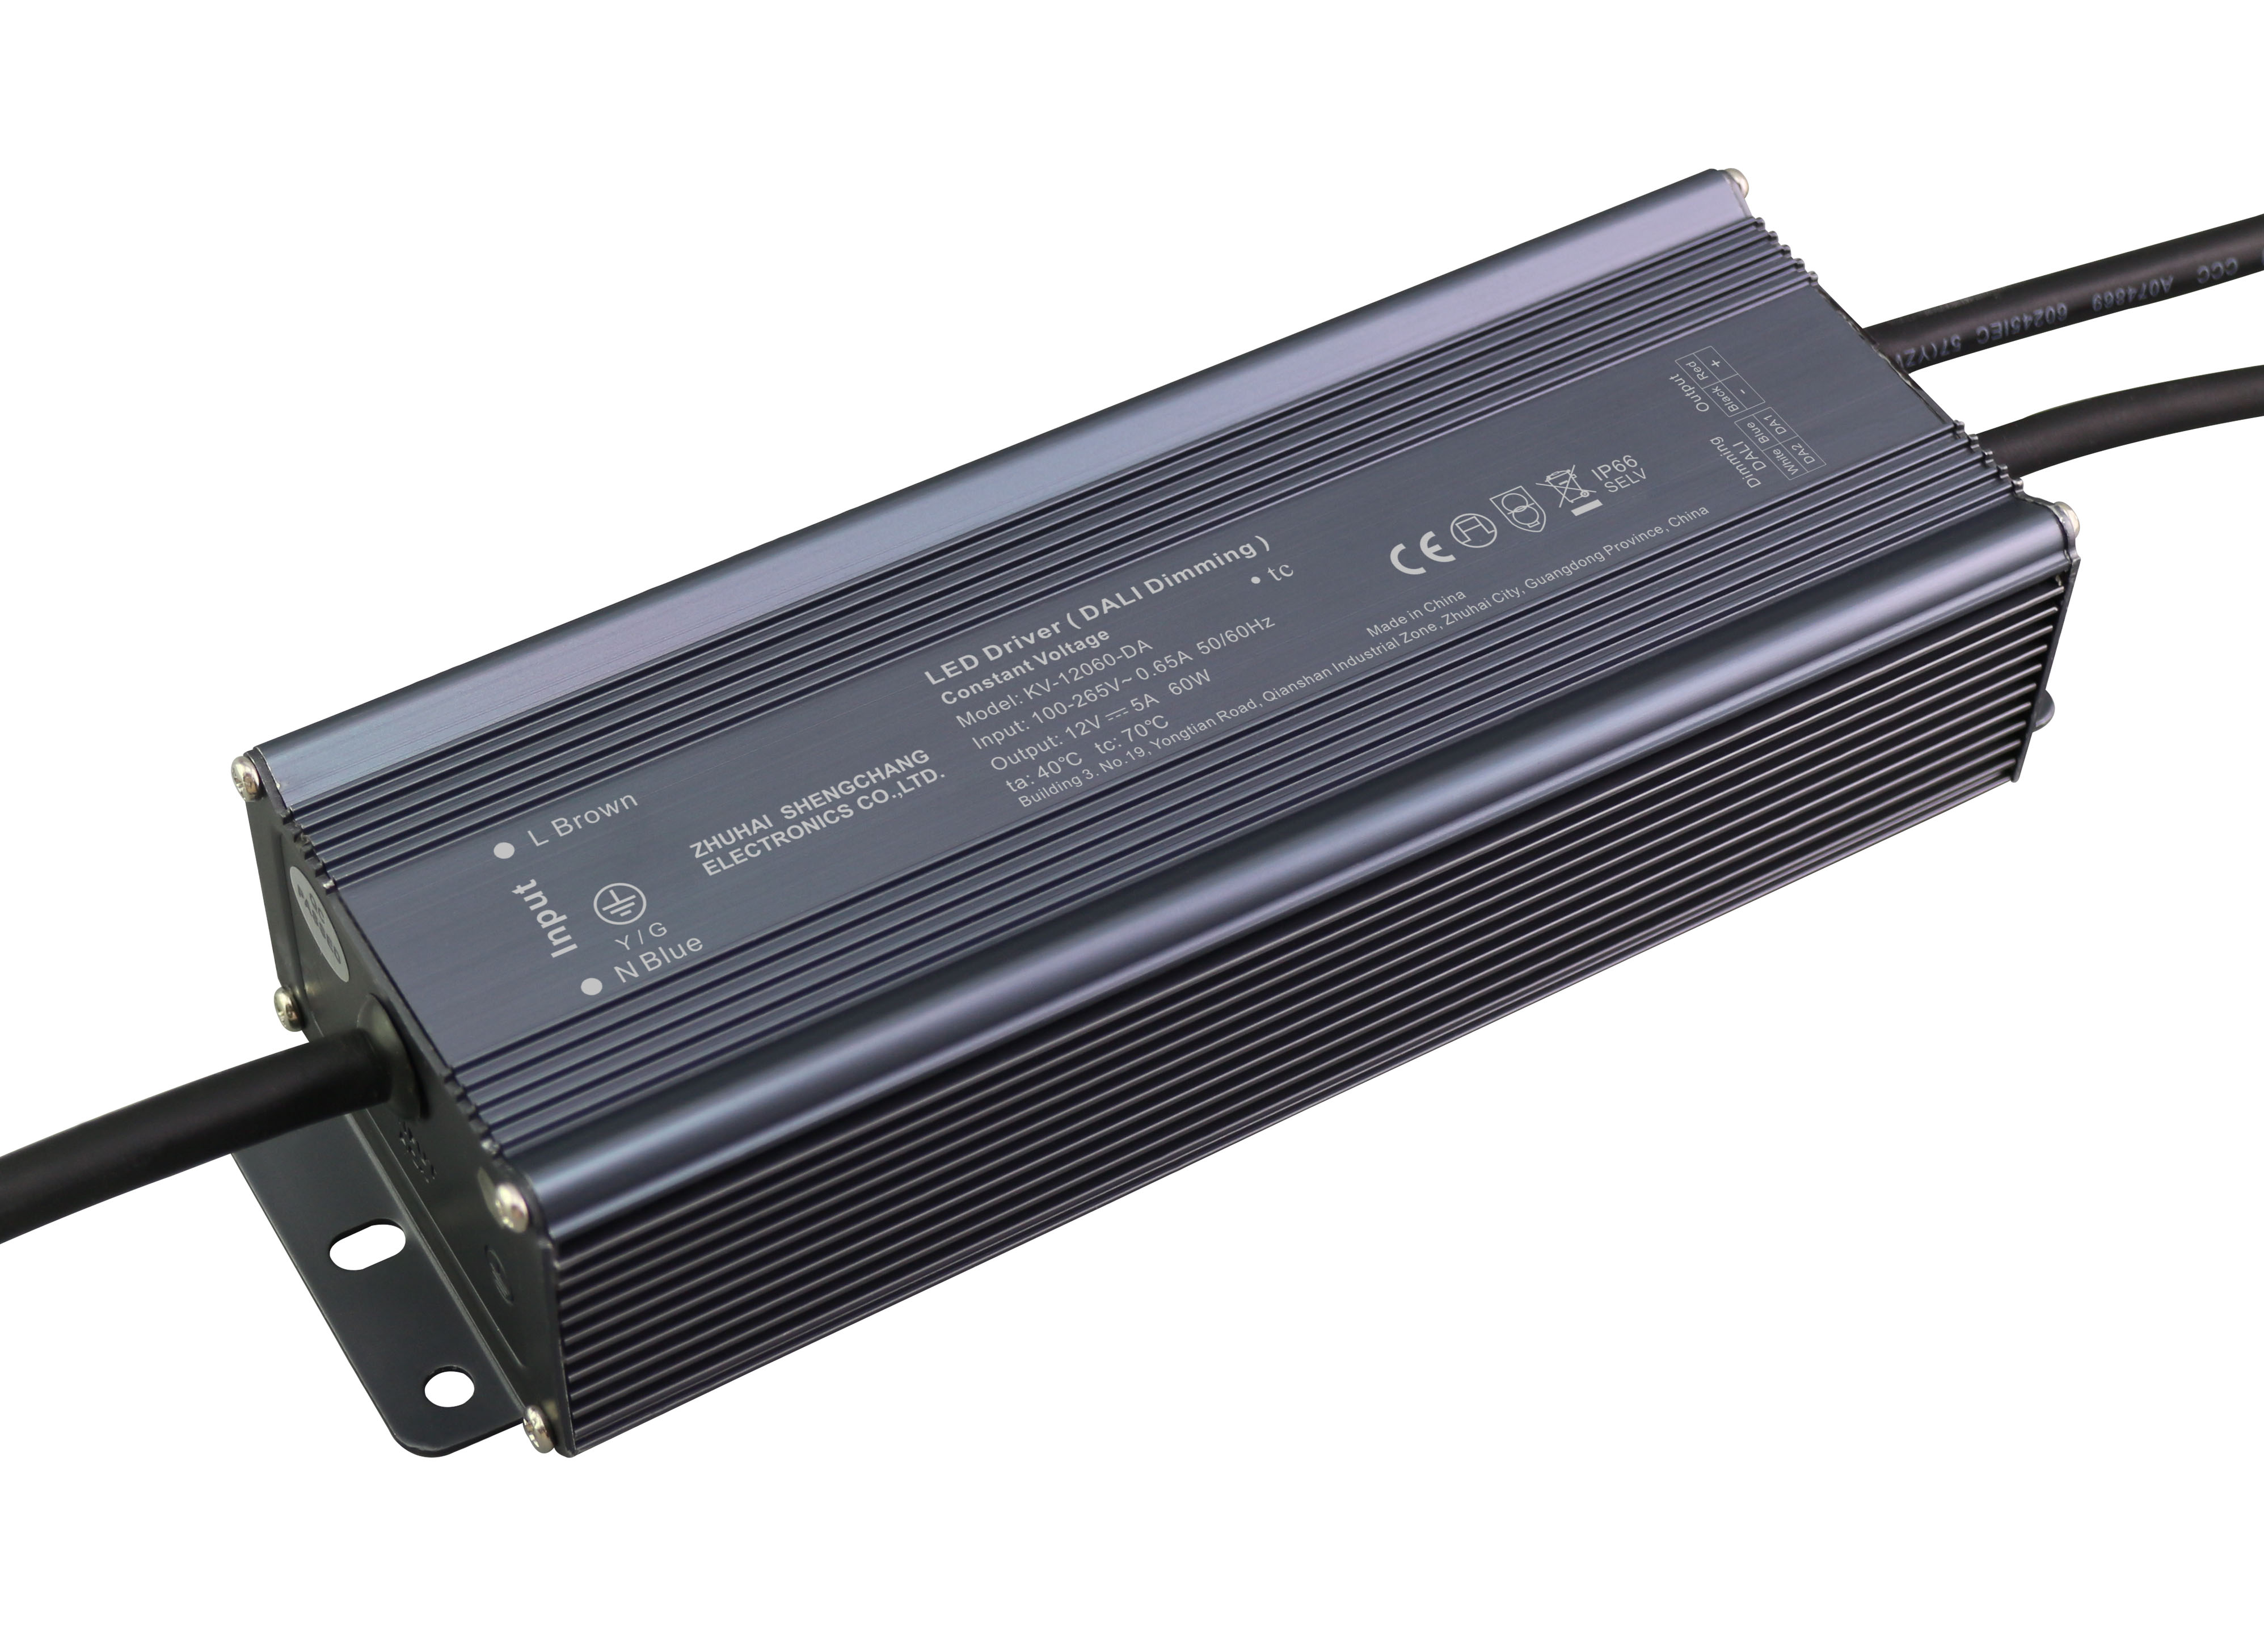 KV-DA Series 60W DALI constant voltage dimmable LED driver